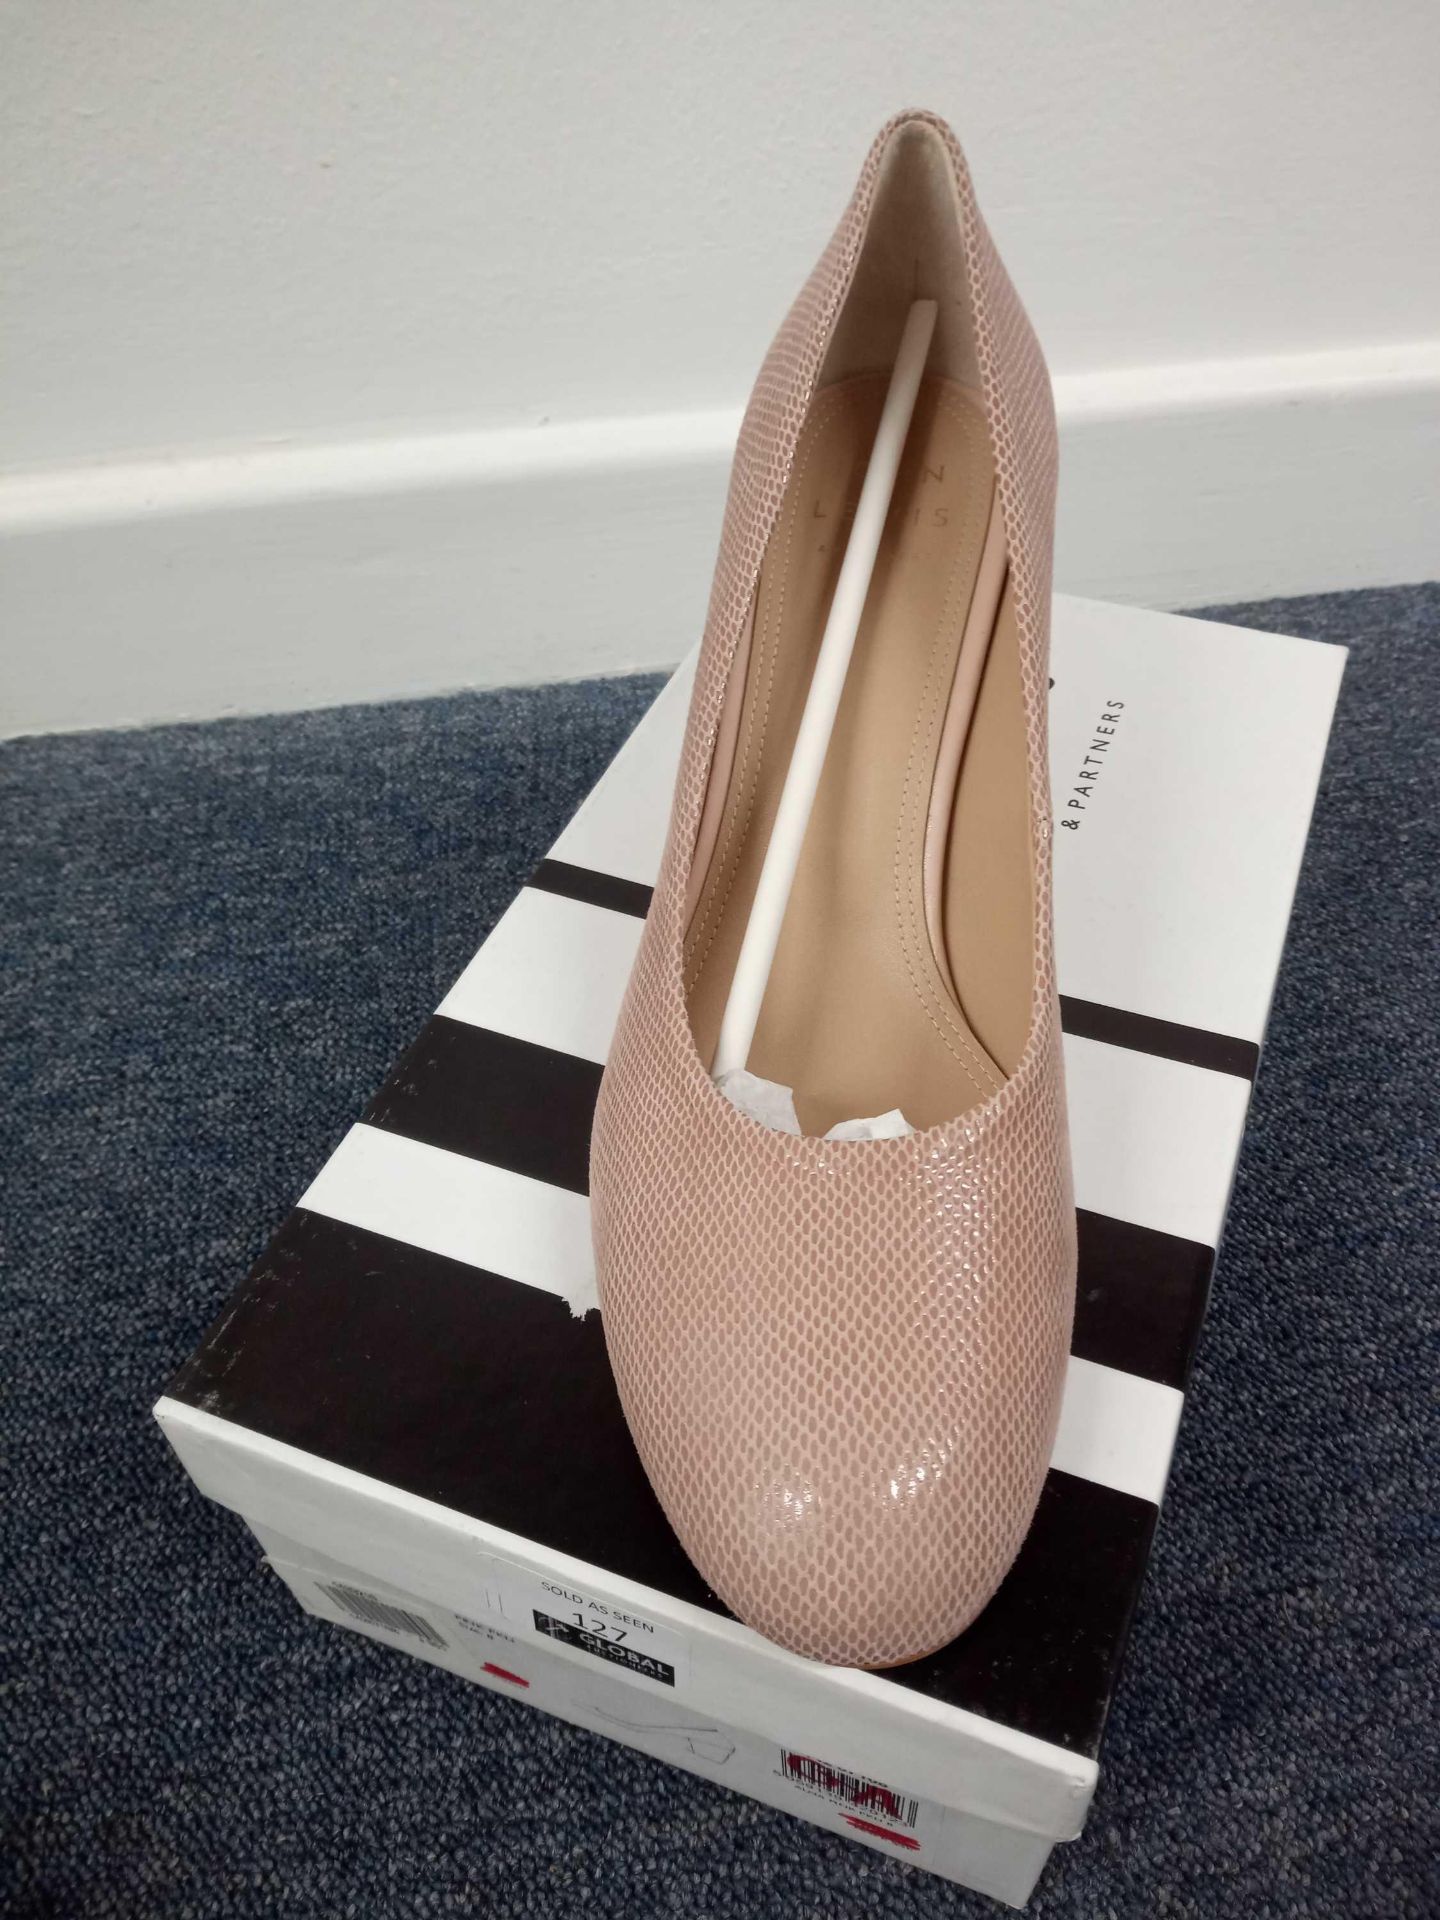 John Lewis Alma Pink Shoe Size 8 (1433210)